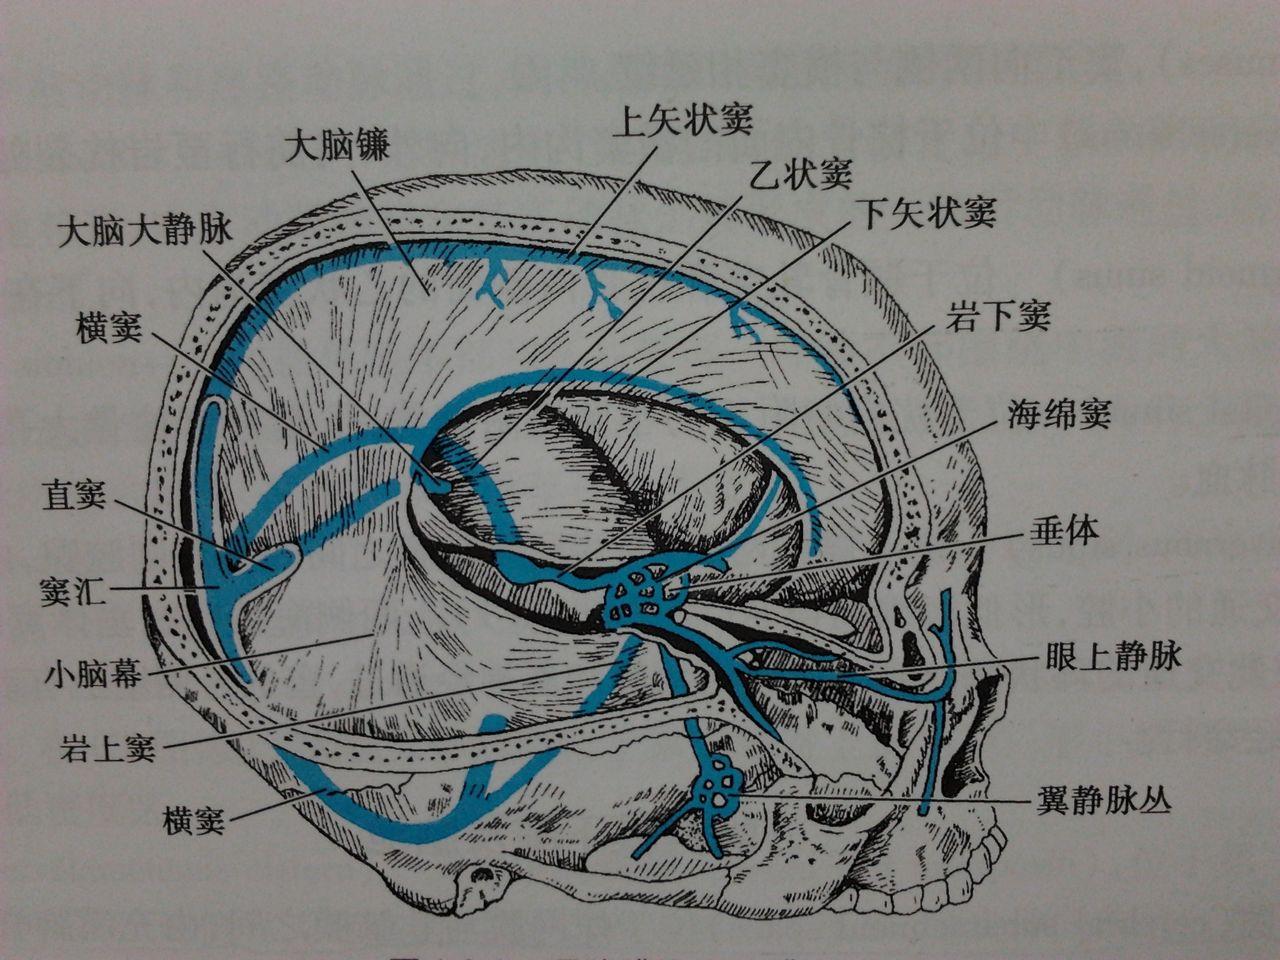 形成直窦主要引流丘脑,颞叶内侧面,枕叶和小脑上蚓部